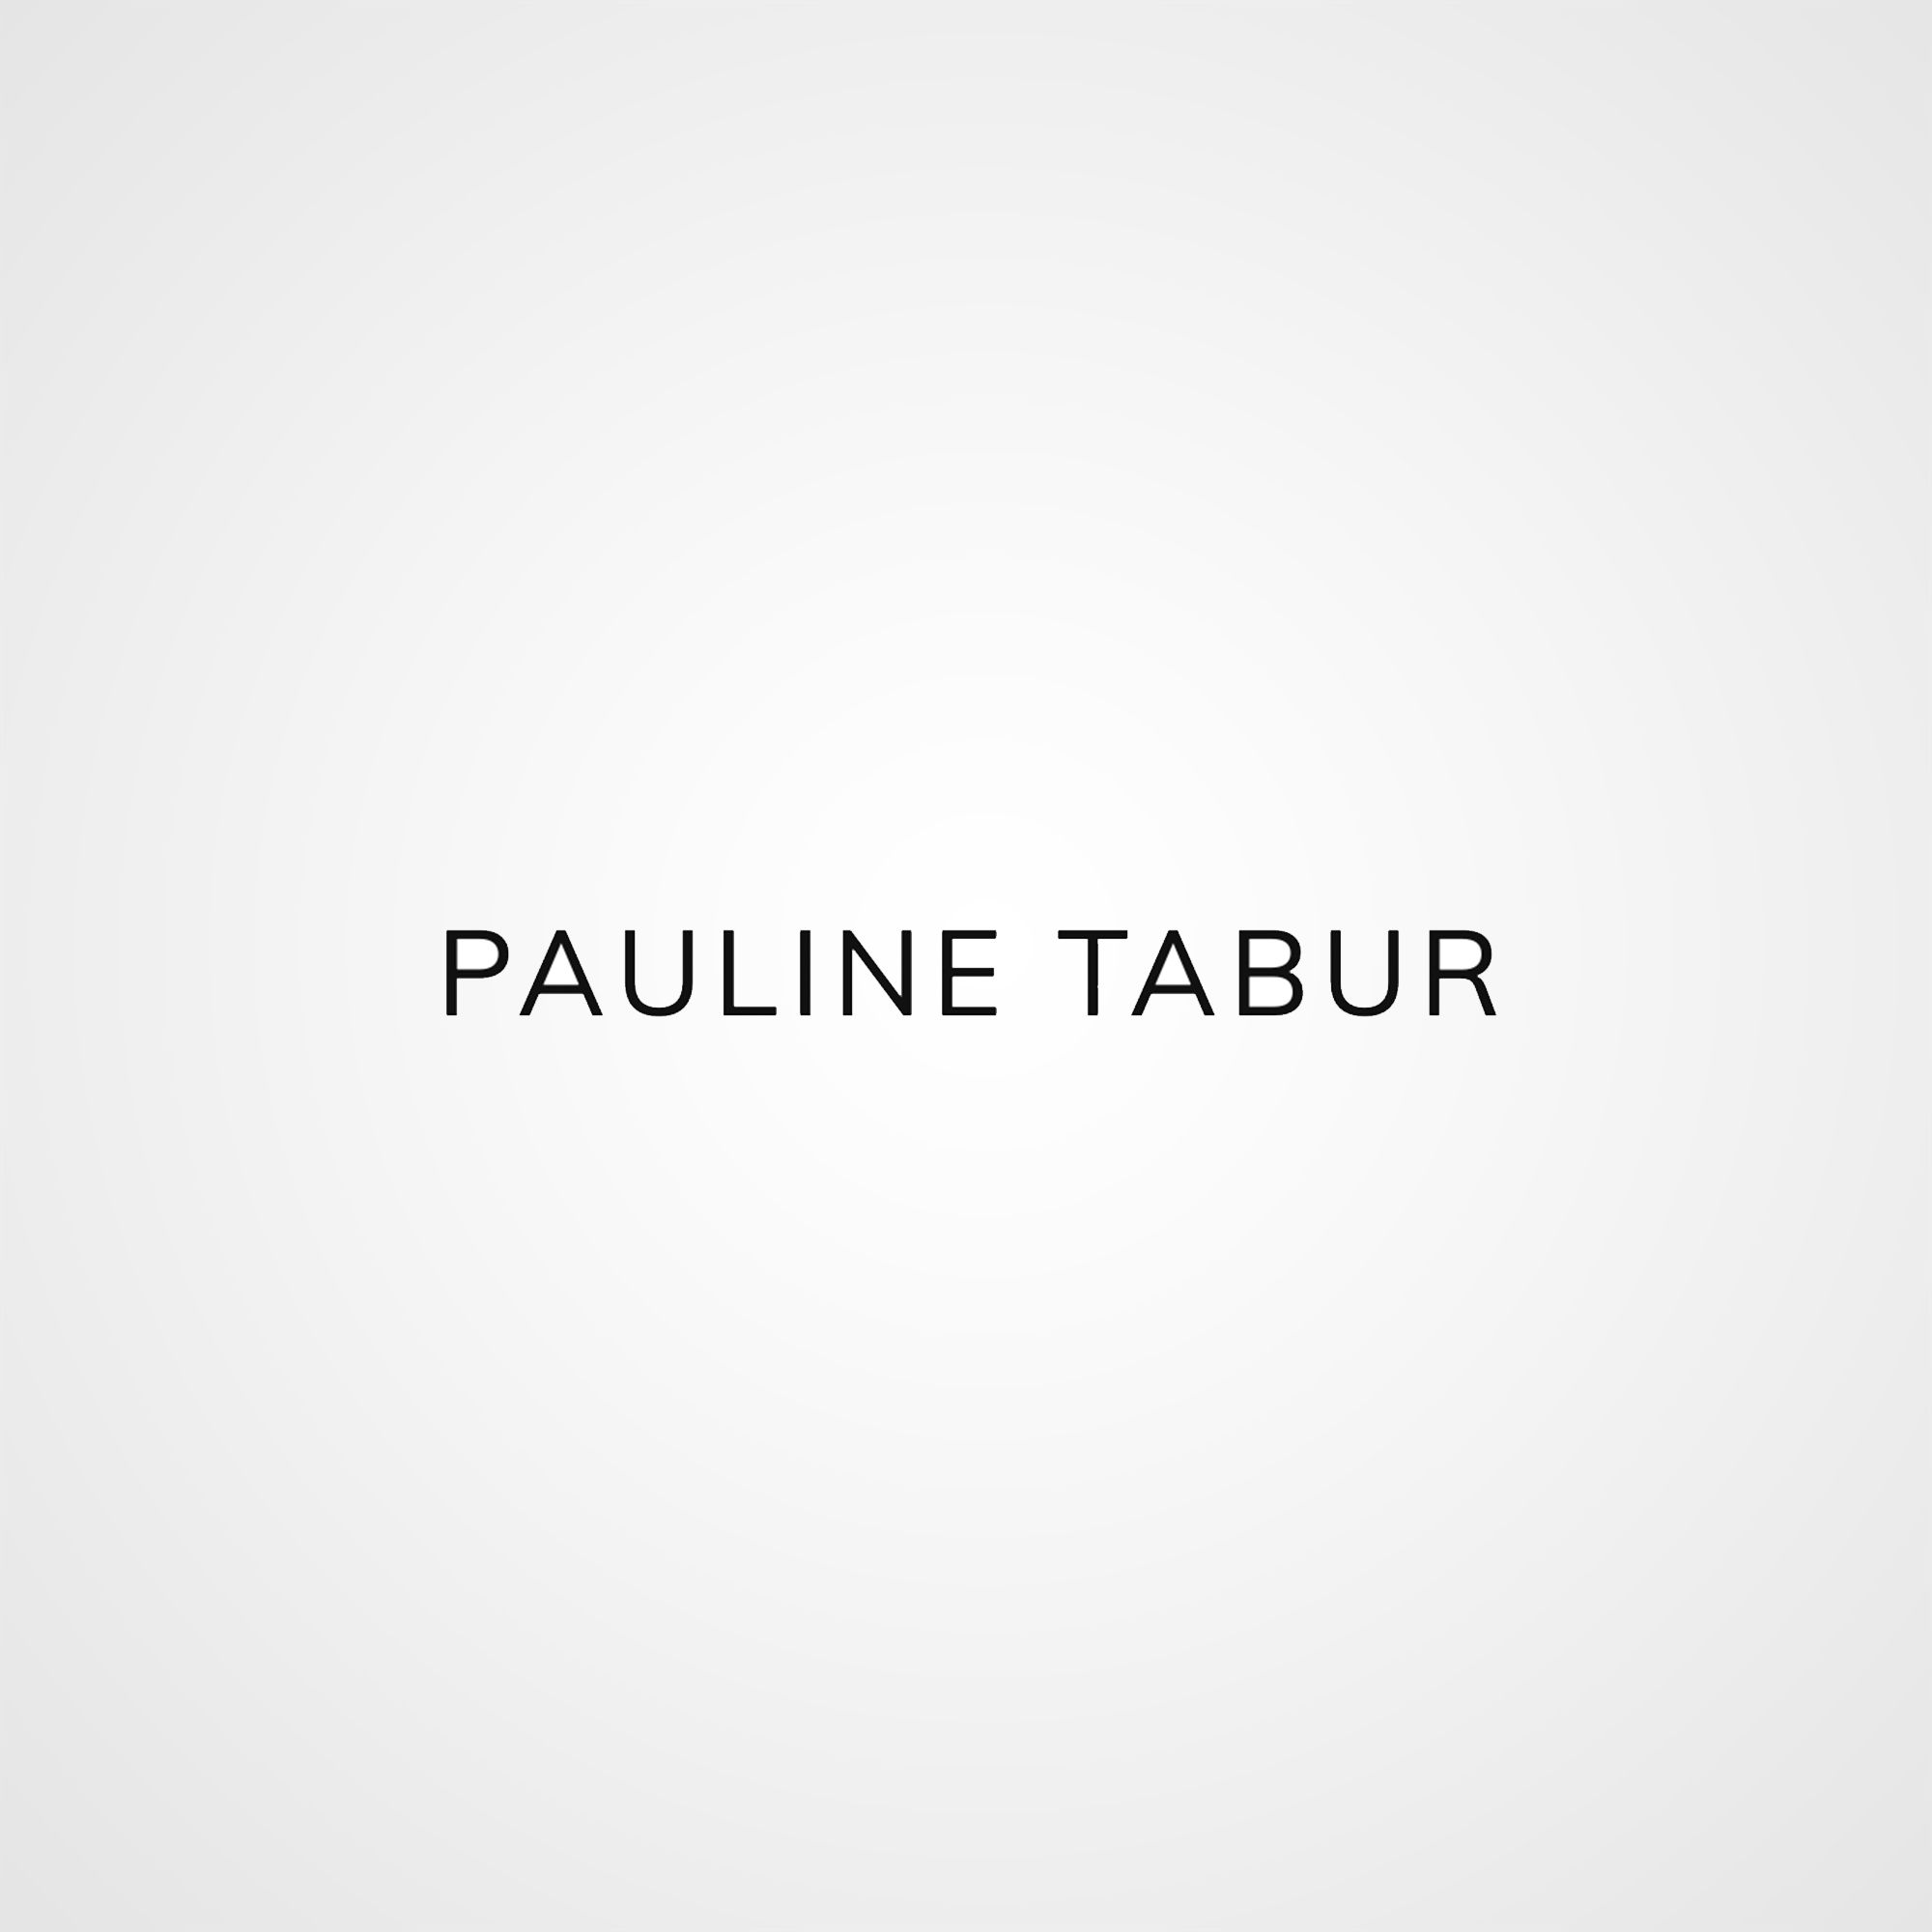 Pauline Tabur